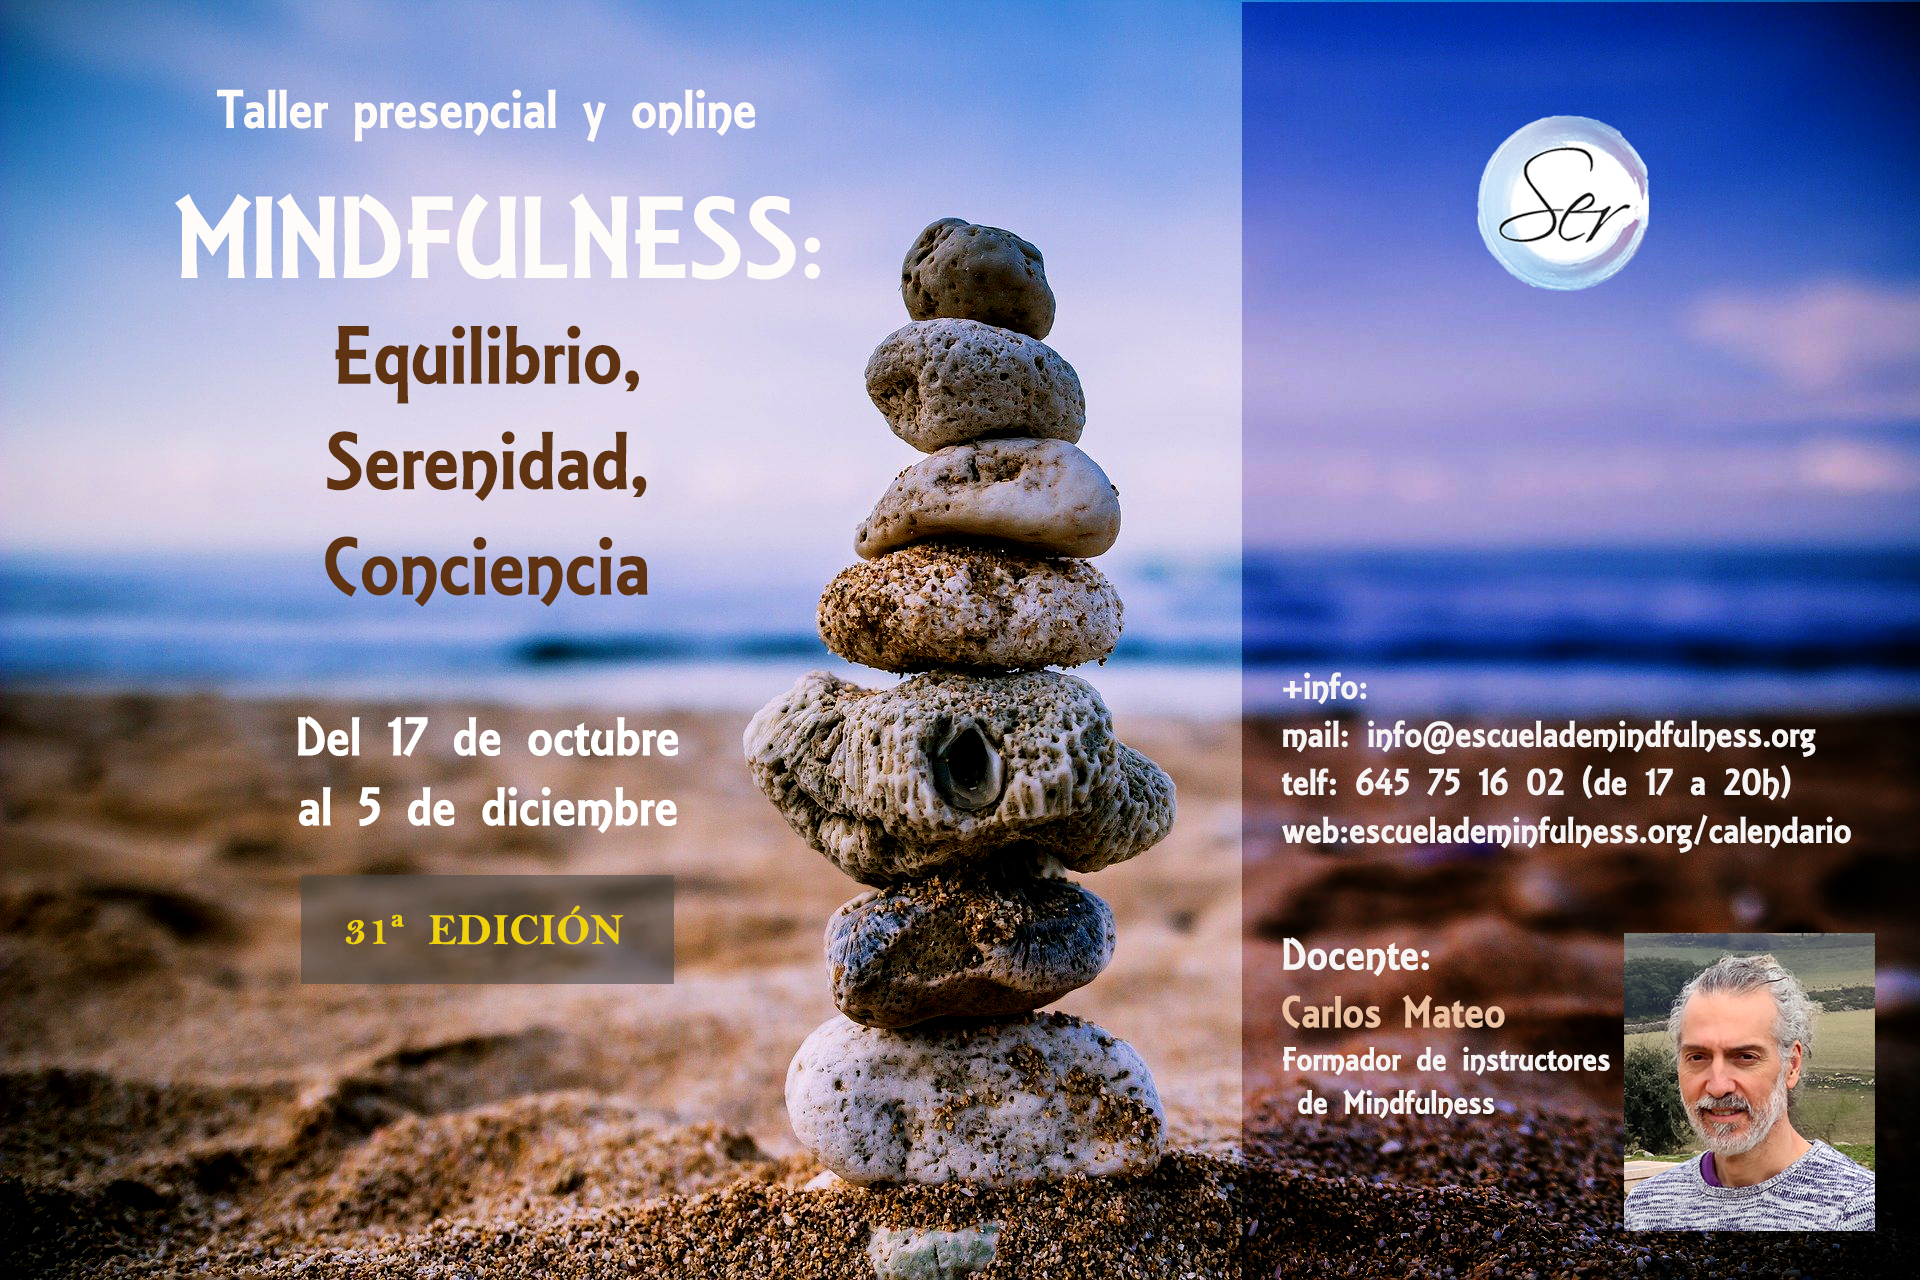 Taller presencial y online de Mindfulness, comienzo 17 de octubre 2022 – 31ª EDICIÓN